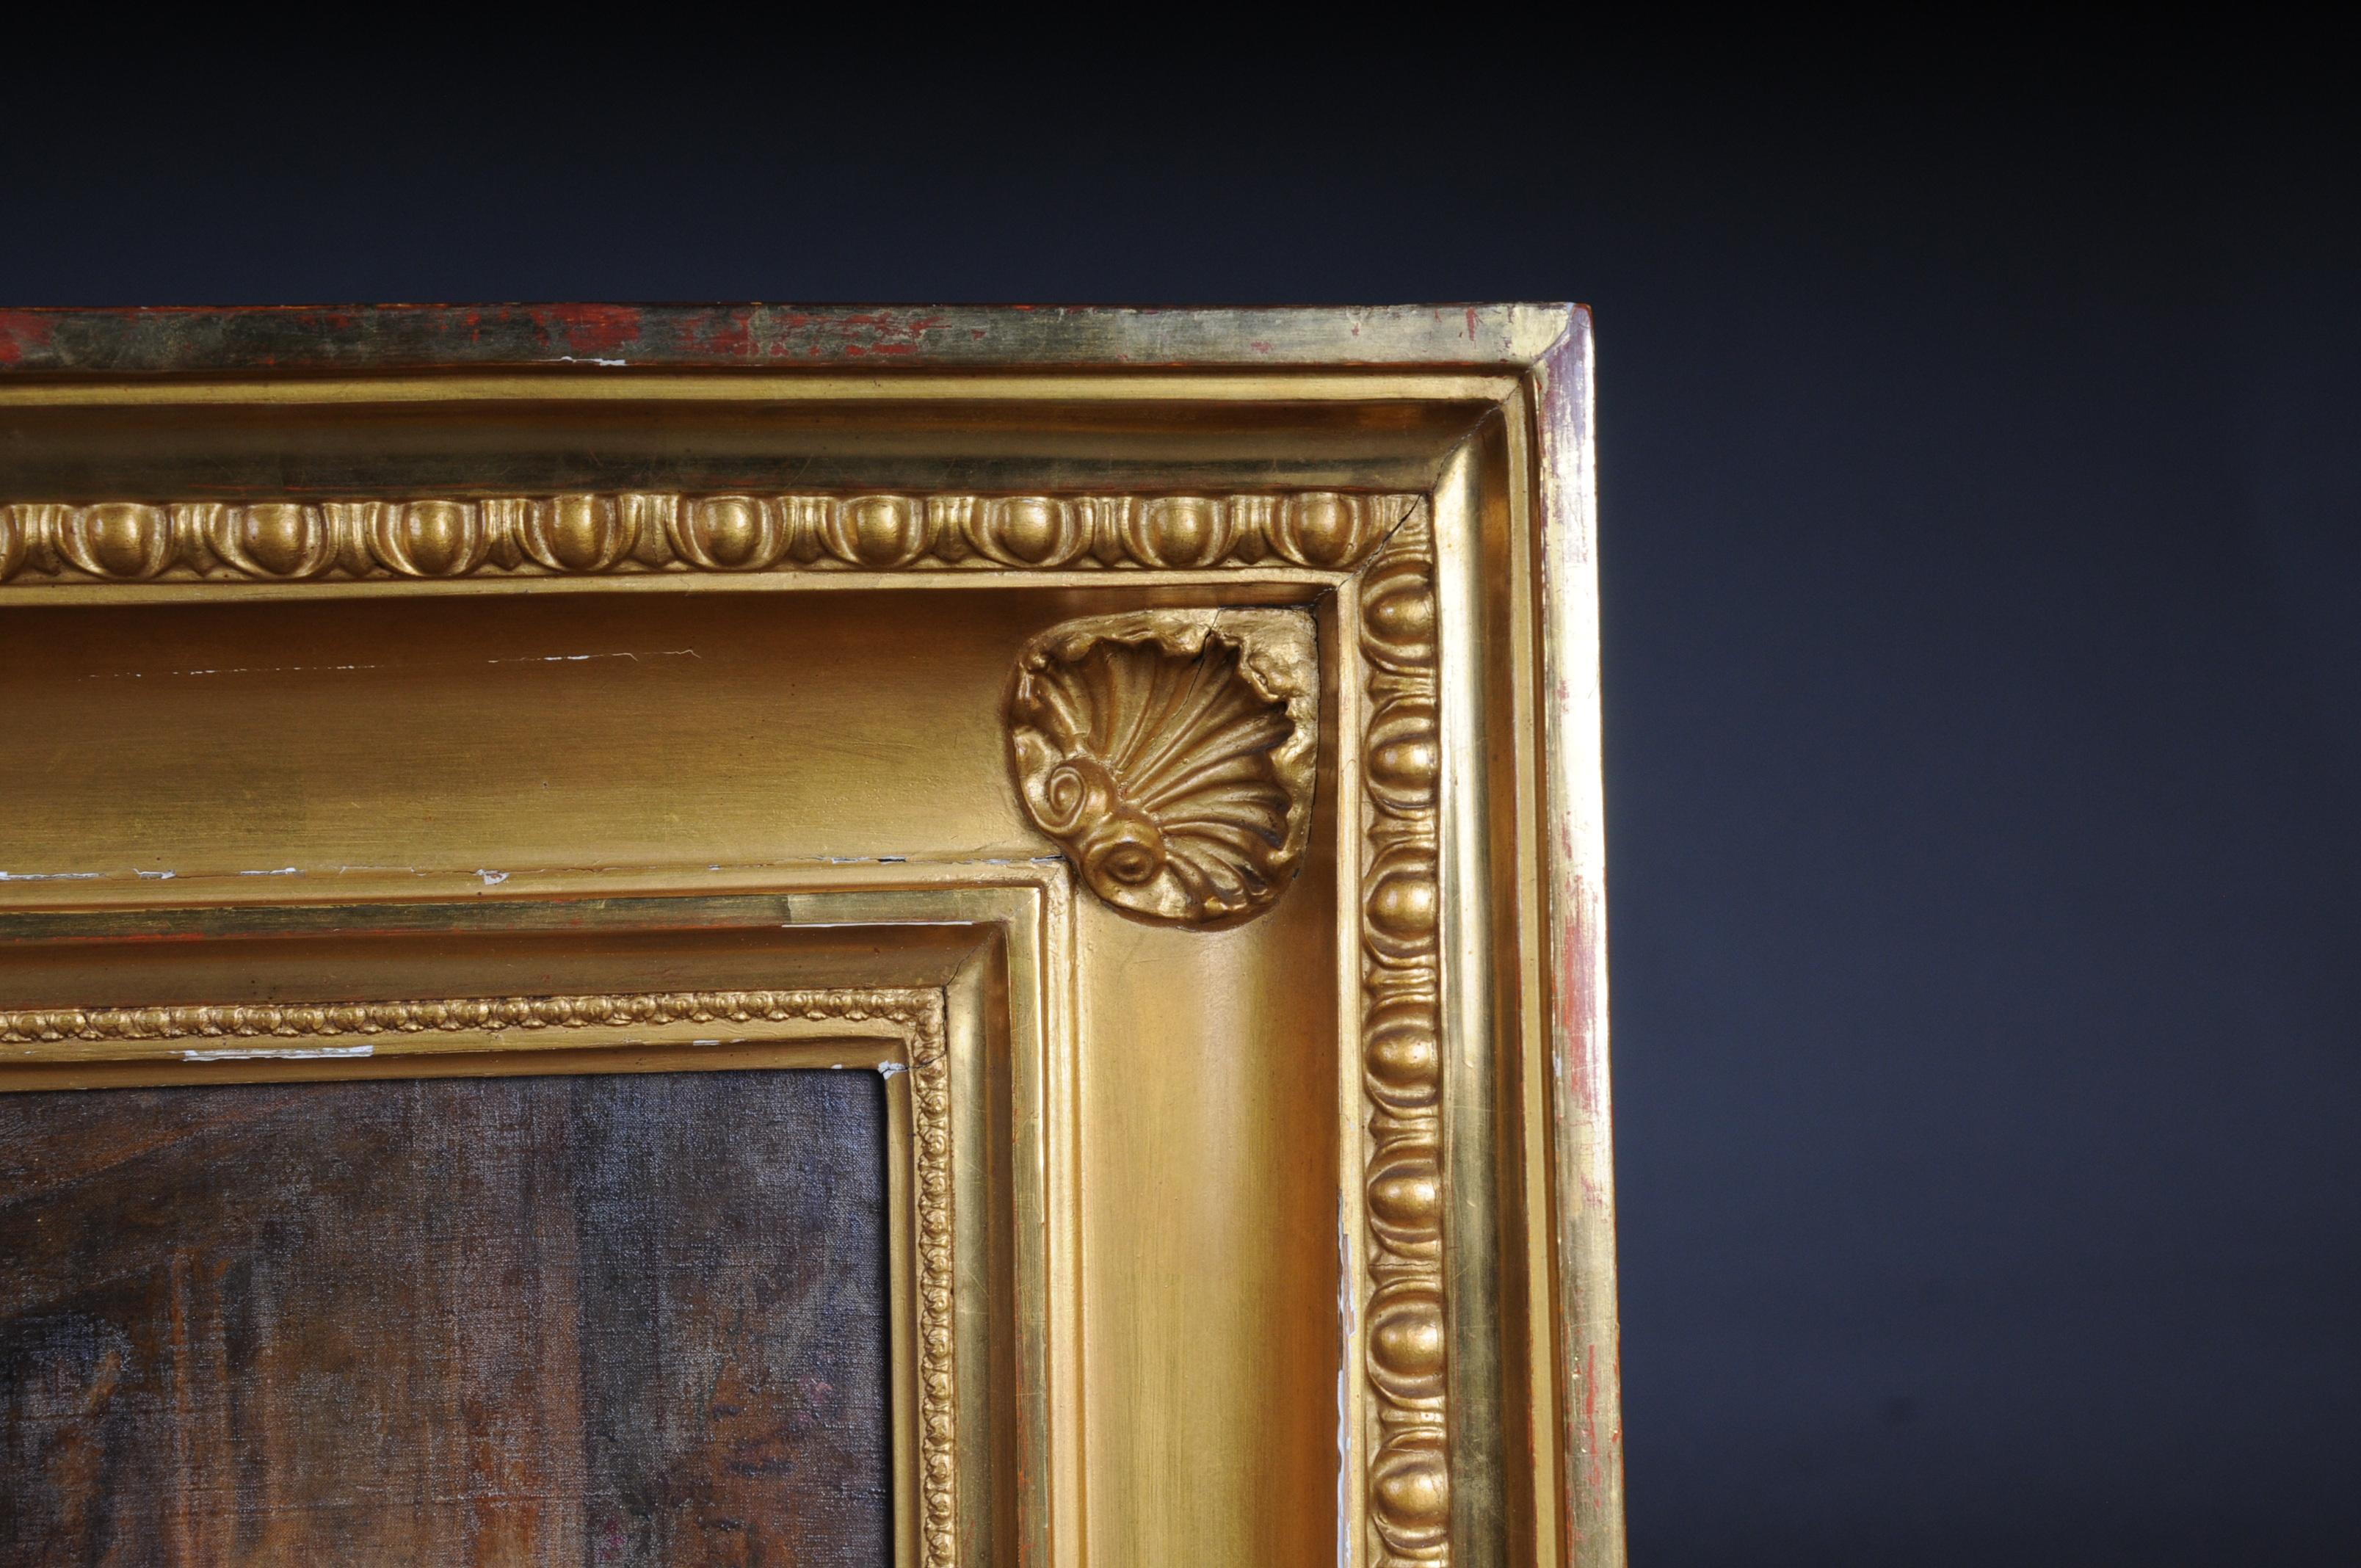 Peinture à l'huile monumentale sur toile avec un large cadre doré.
Présentation d'une audience royale au palais. Intérieur splendide et royal.
Signé par le peintre italien : Angelo Zoffoli, Rome 1860-1910
(S-196).
 